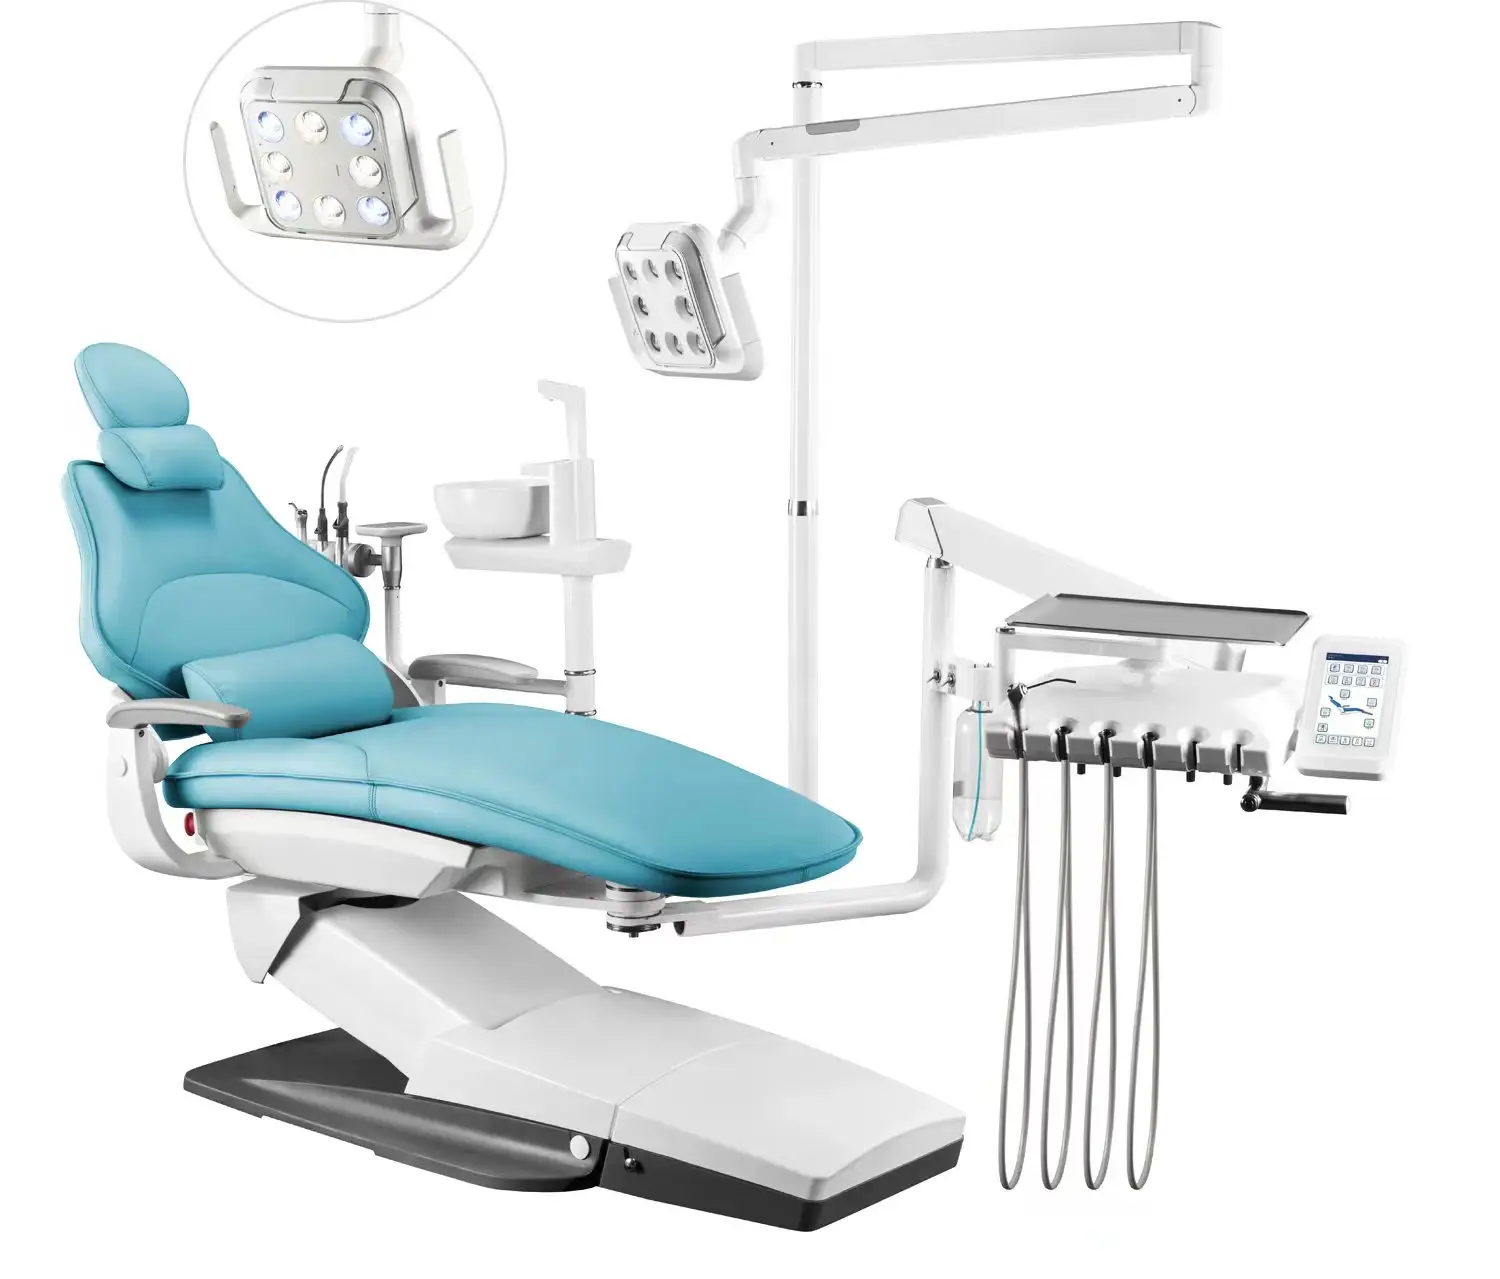 A4 para canhoto tipo americano de alta qualidade luxo CE Dental Medical elétrica conjunto completo equipamentos de cadeira odontológica